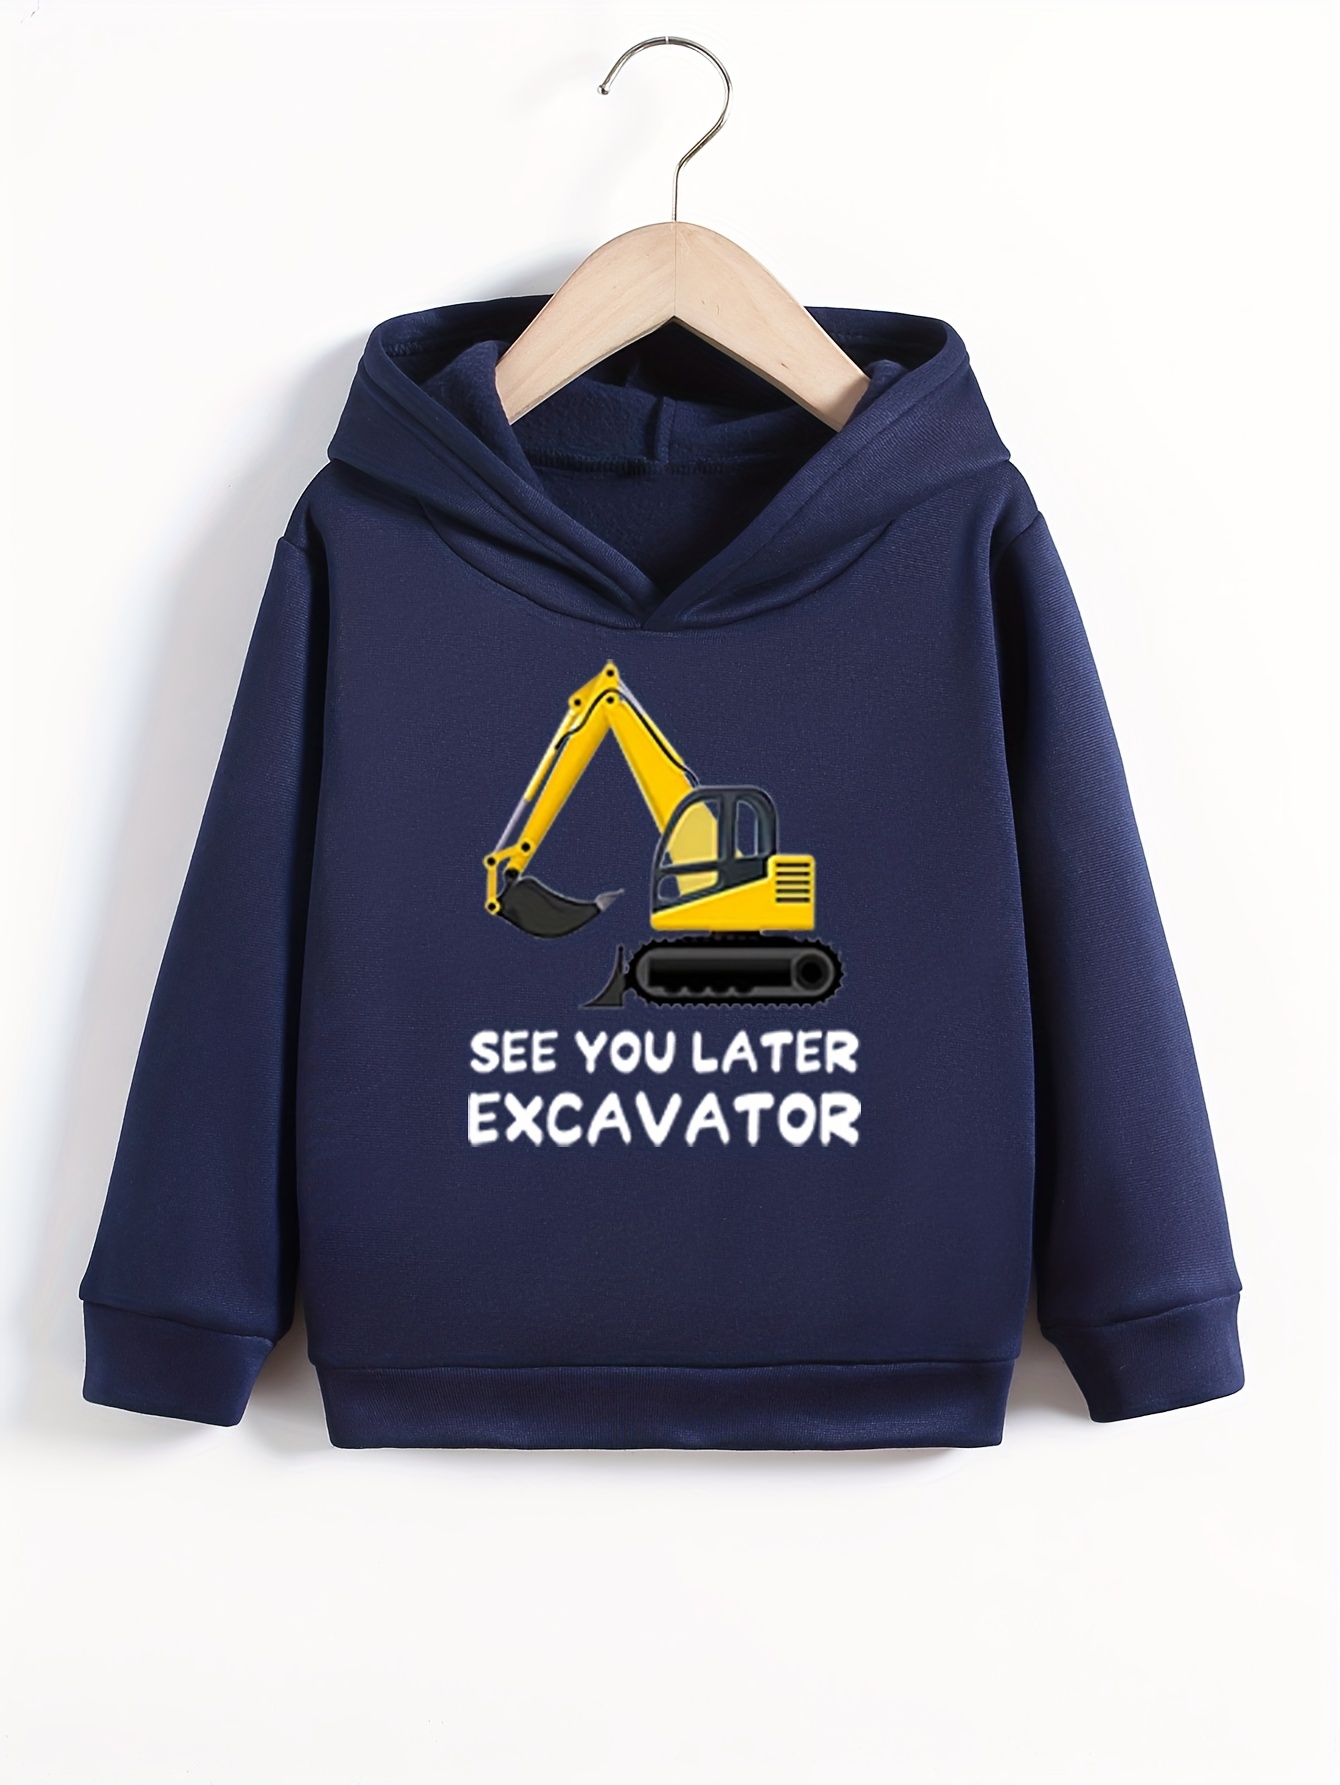 Excavator - Temu Canada